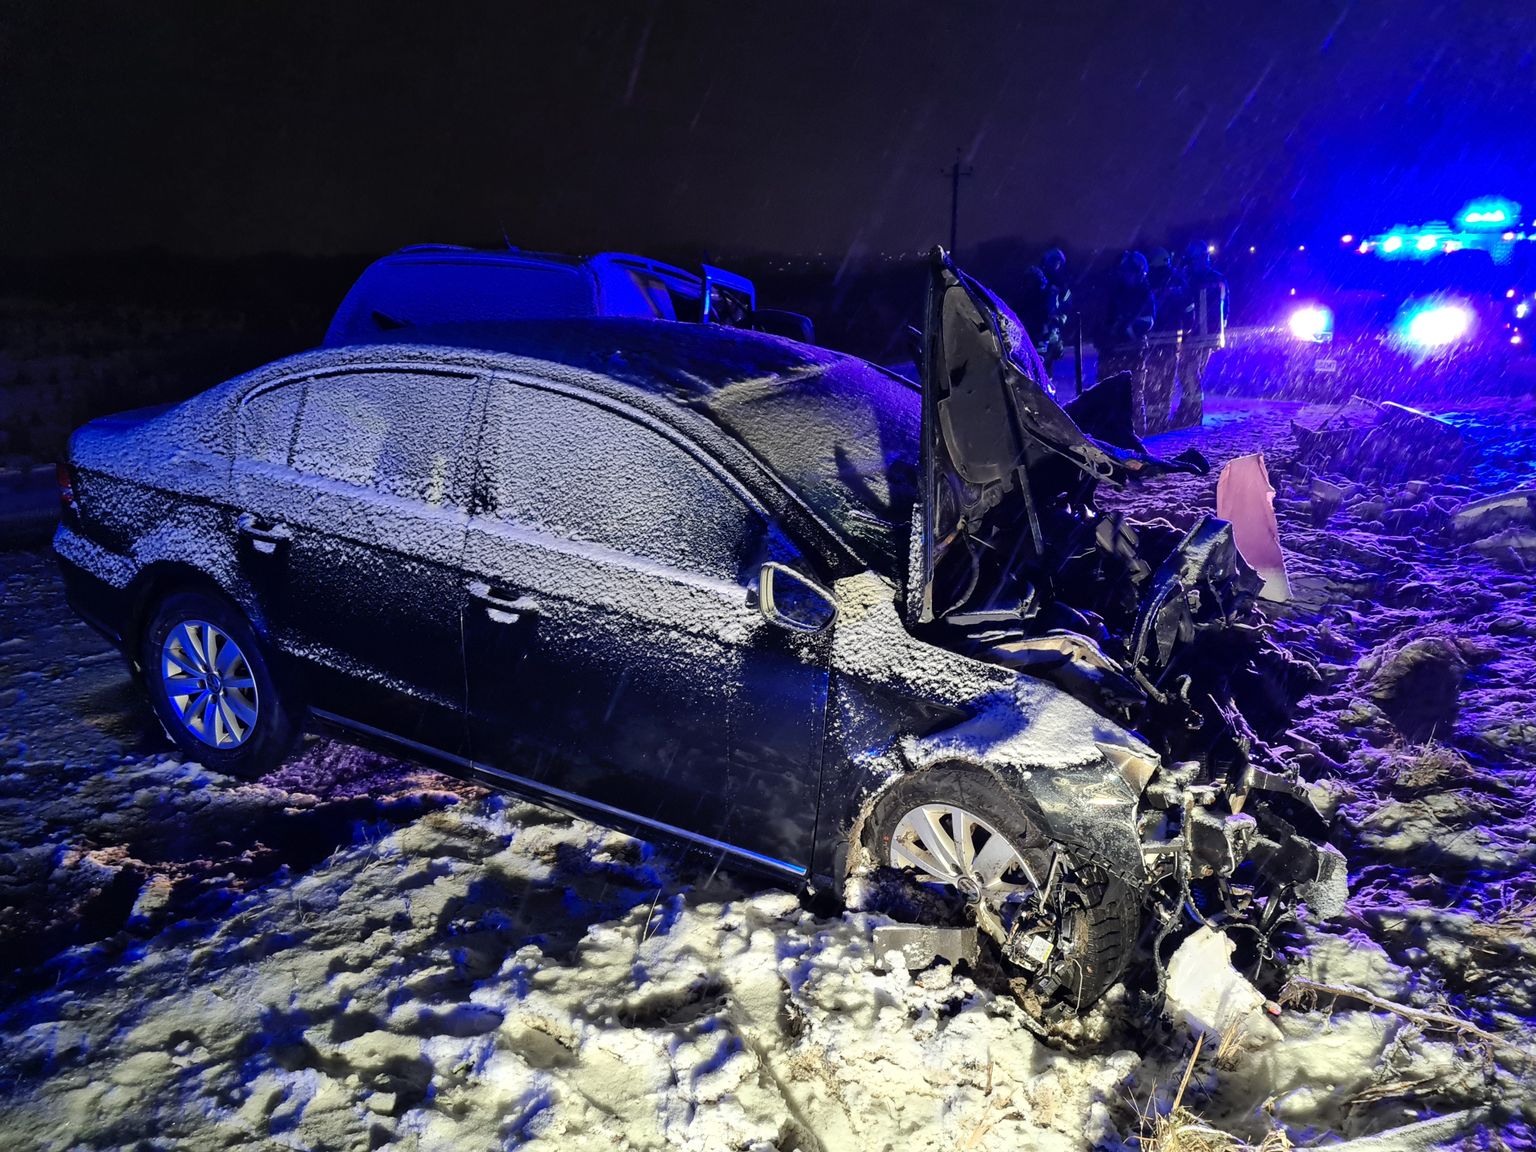 Тяжелая авария произошла 28 января, когда в деревне Аардлапалу 51-летний мужчина выехал на встречную полосу и произошло лобовое столкновение с ехавшим ему навстречу Volkswagen Passat.